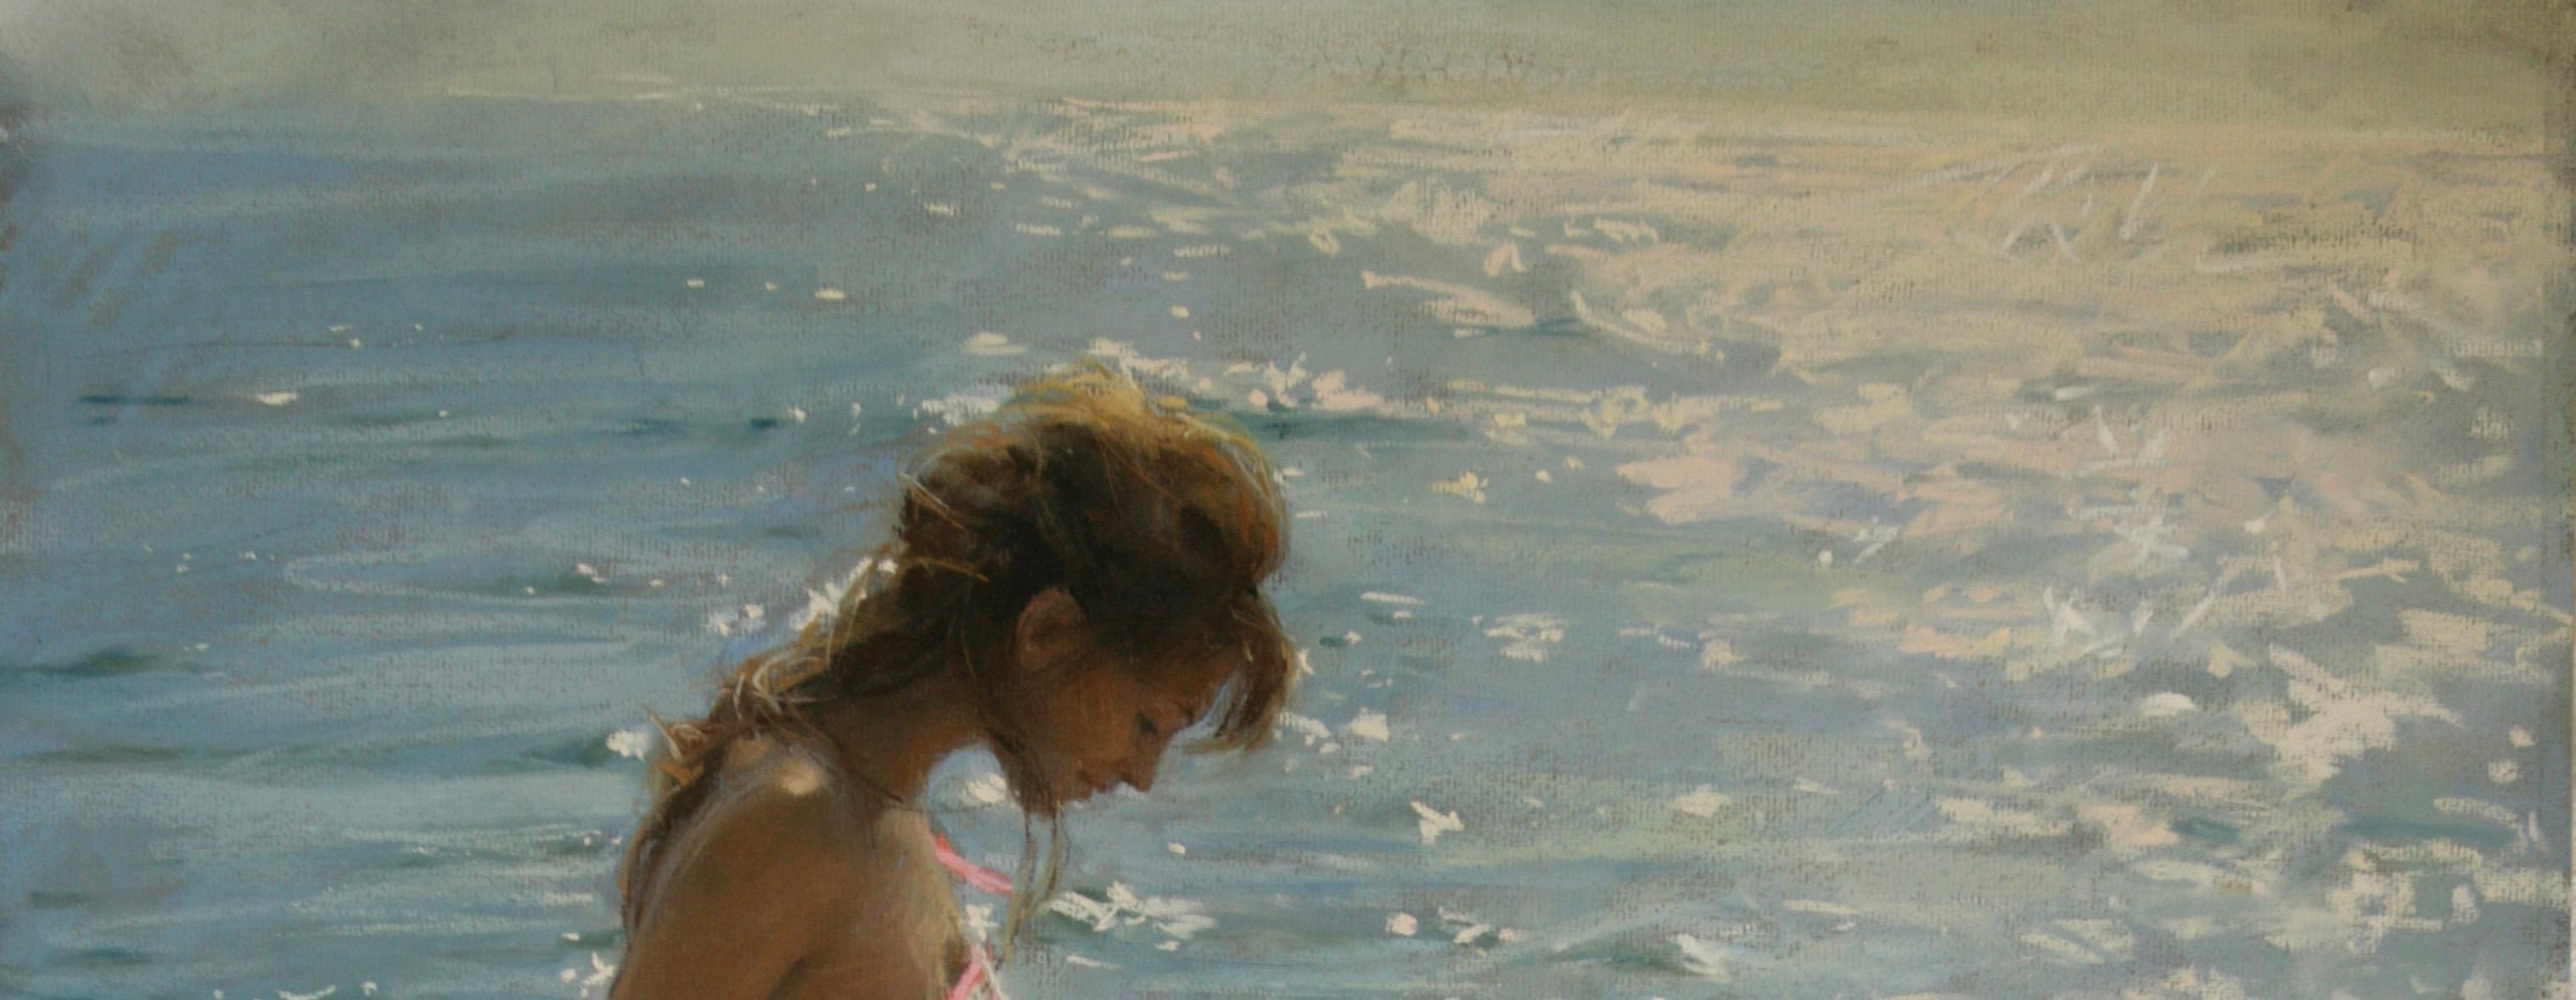 BY THE EDGE OF THE SEA...Vincente Romero Redondo , contemporary Spanish artist. 10